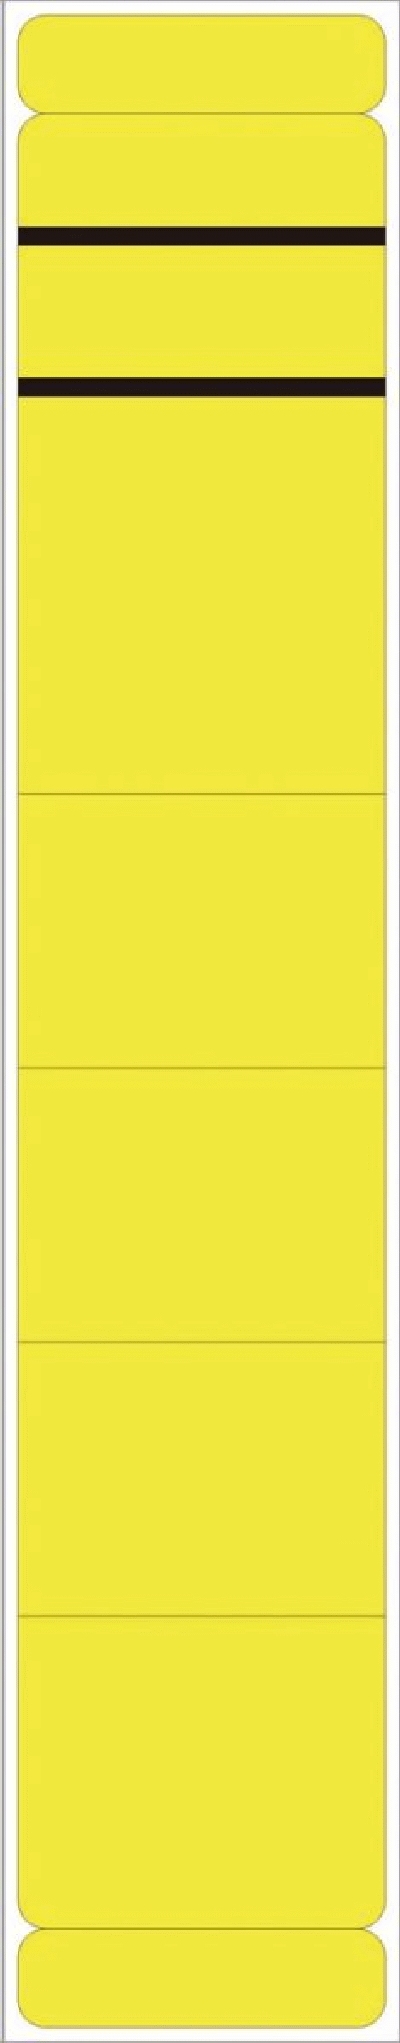 Neutral Ordner Rückenschilder - schmal/kurz, 190 Stück, gelb